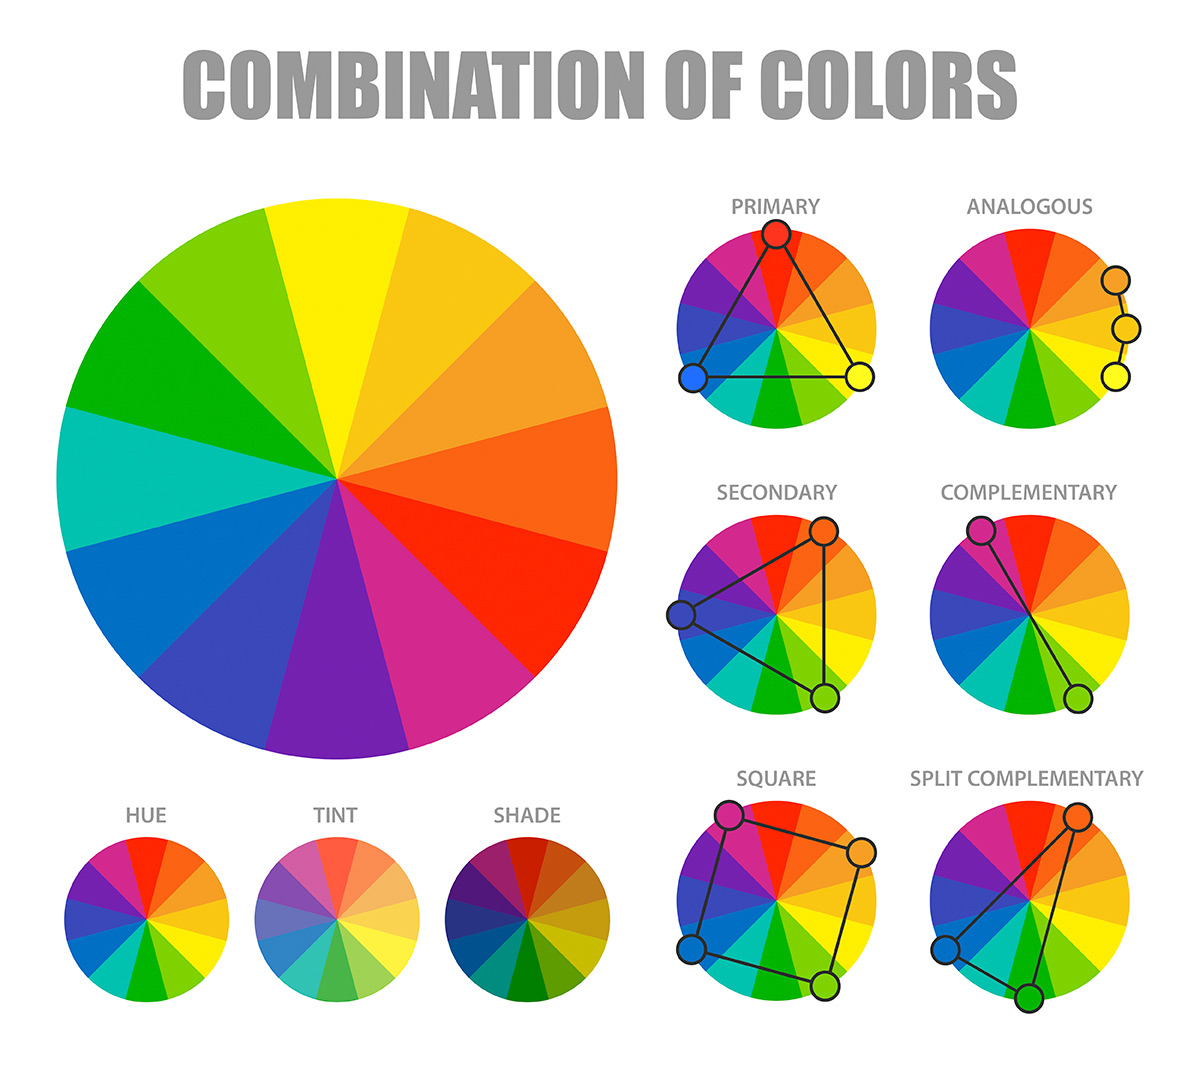 Comment utiliser le cercle chromatique ? - Graphiste Blog